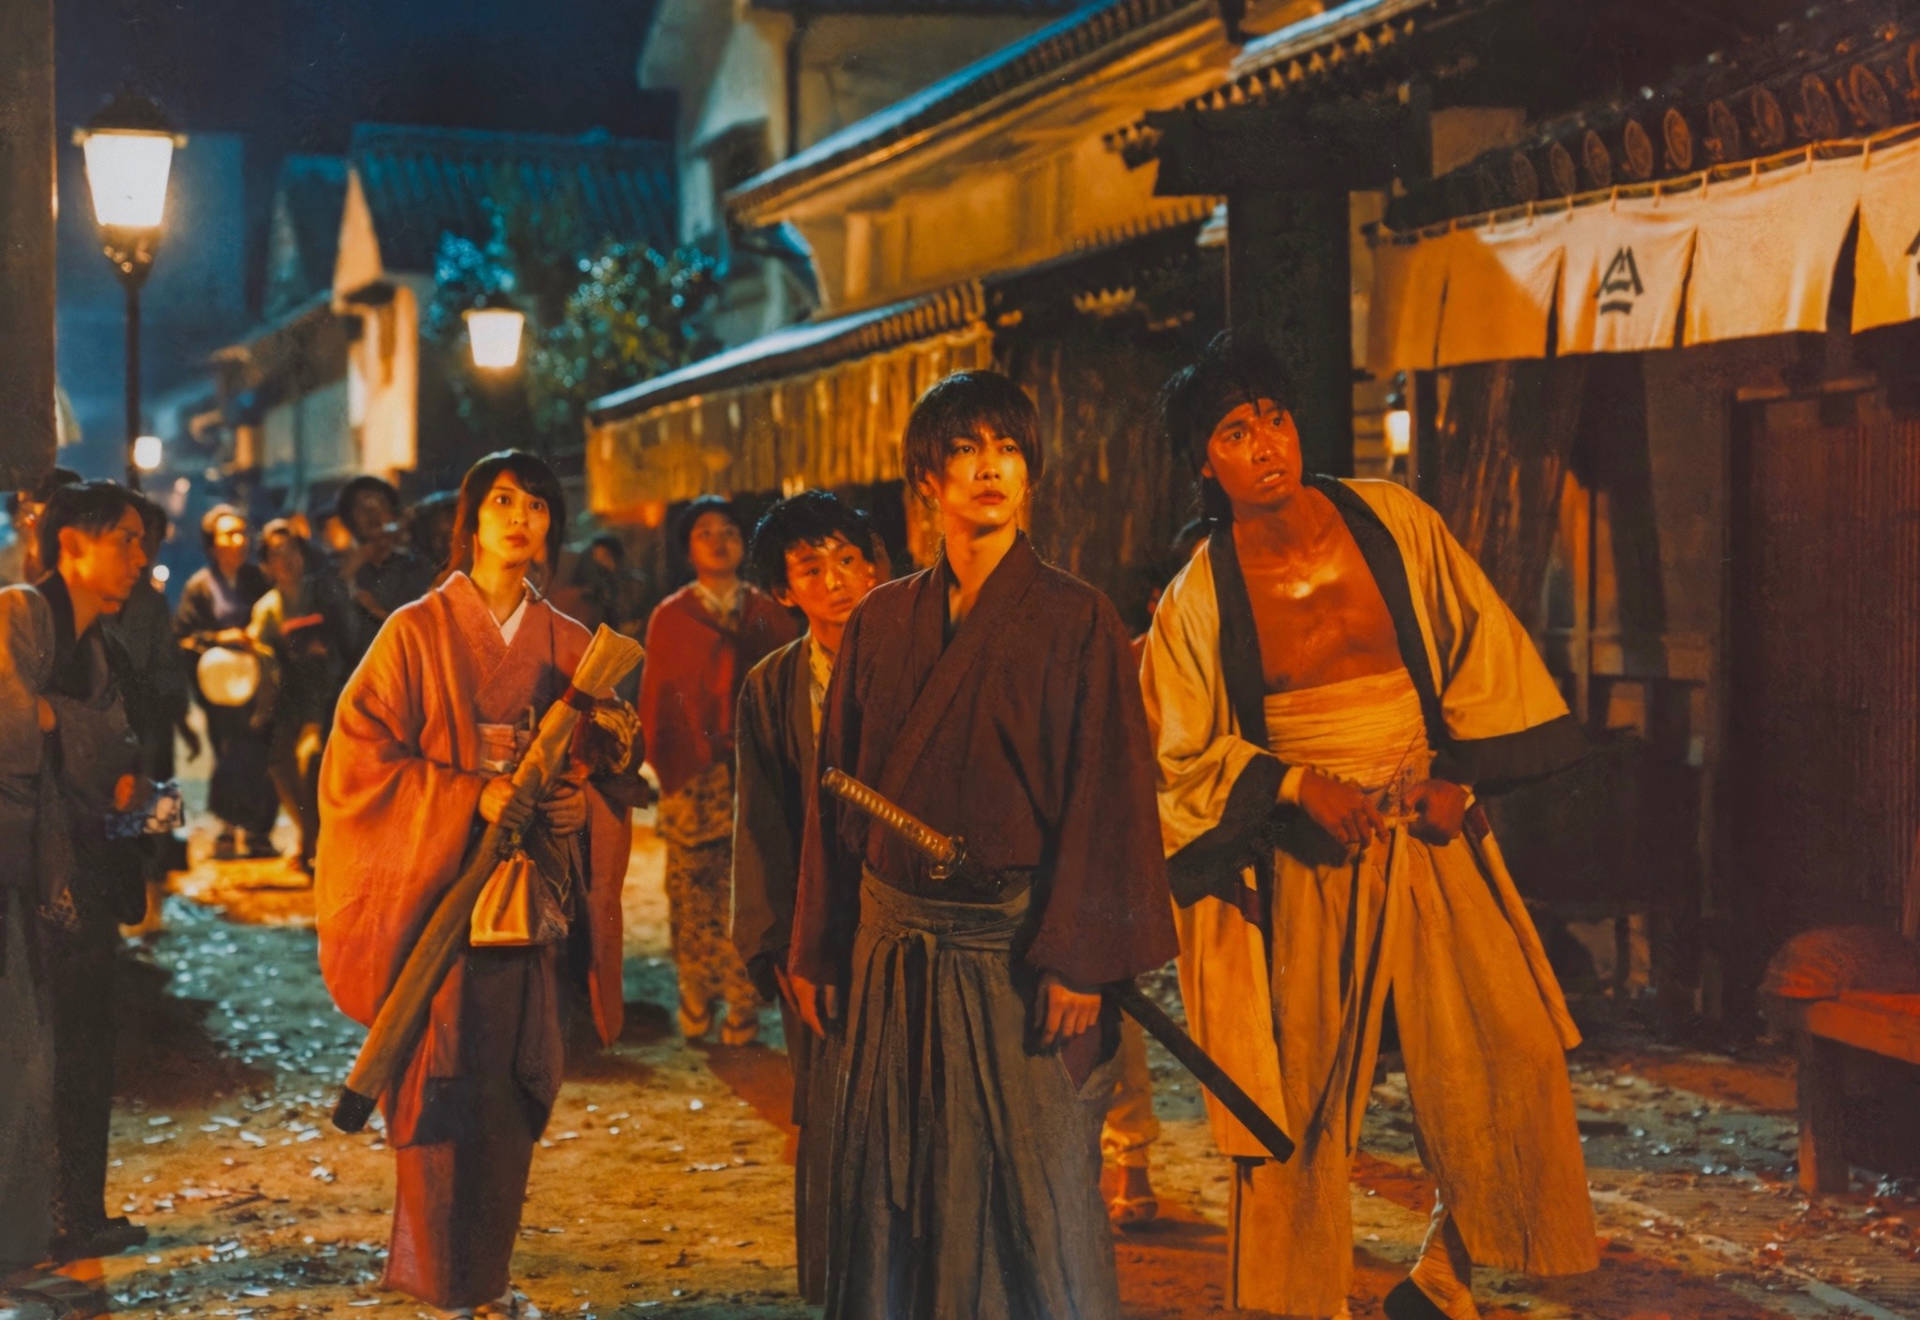 Rurouni Kenshin Curious Night Background